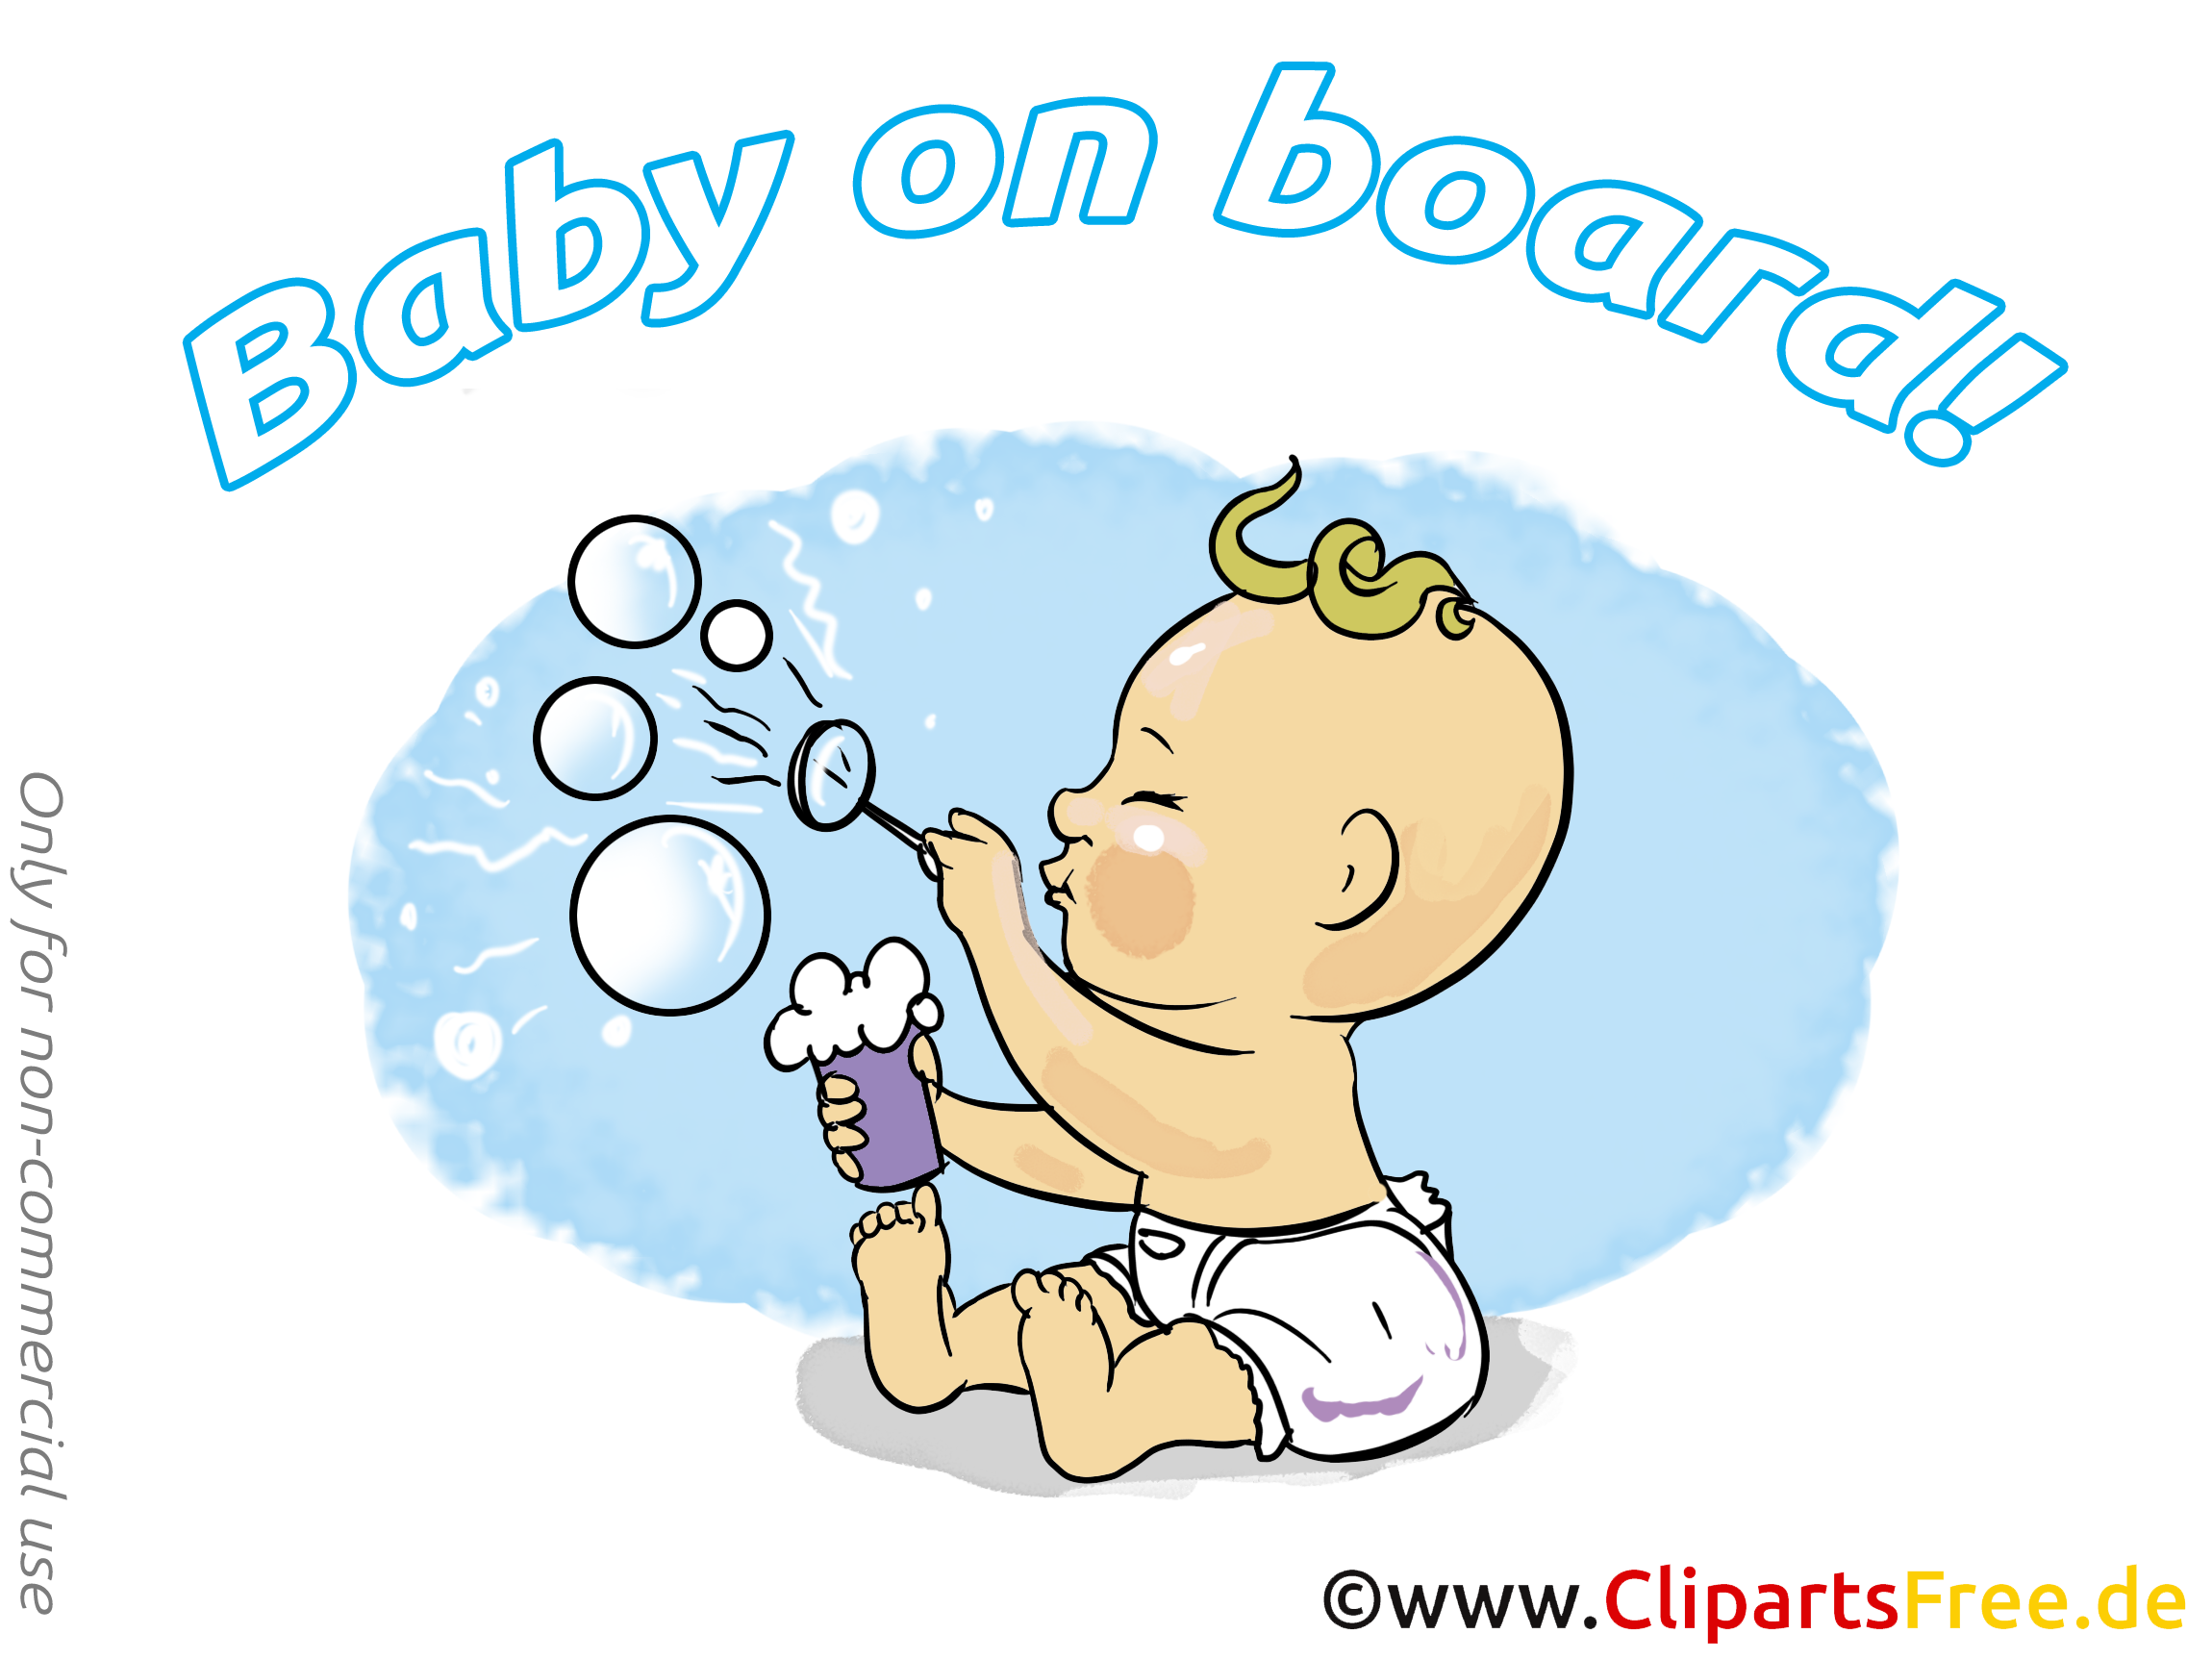 Bulle de savon image à télécharger – Bébé à bord clipart